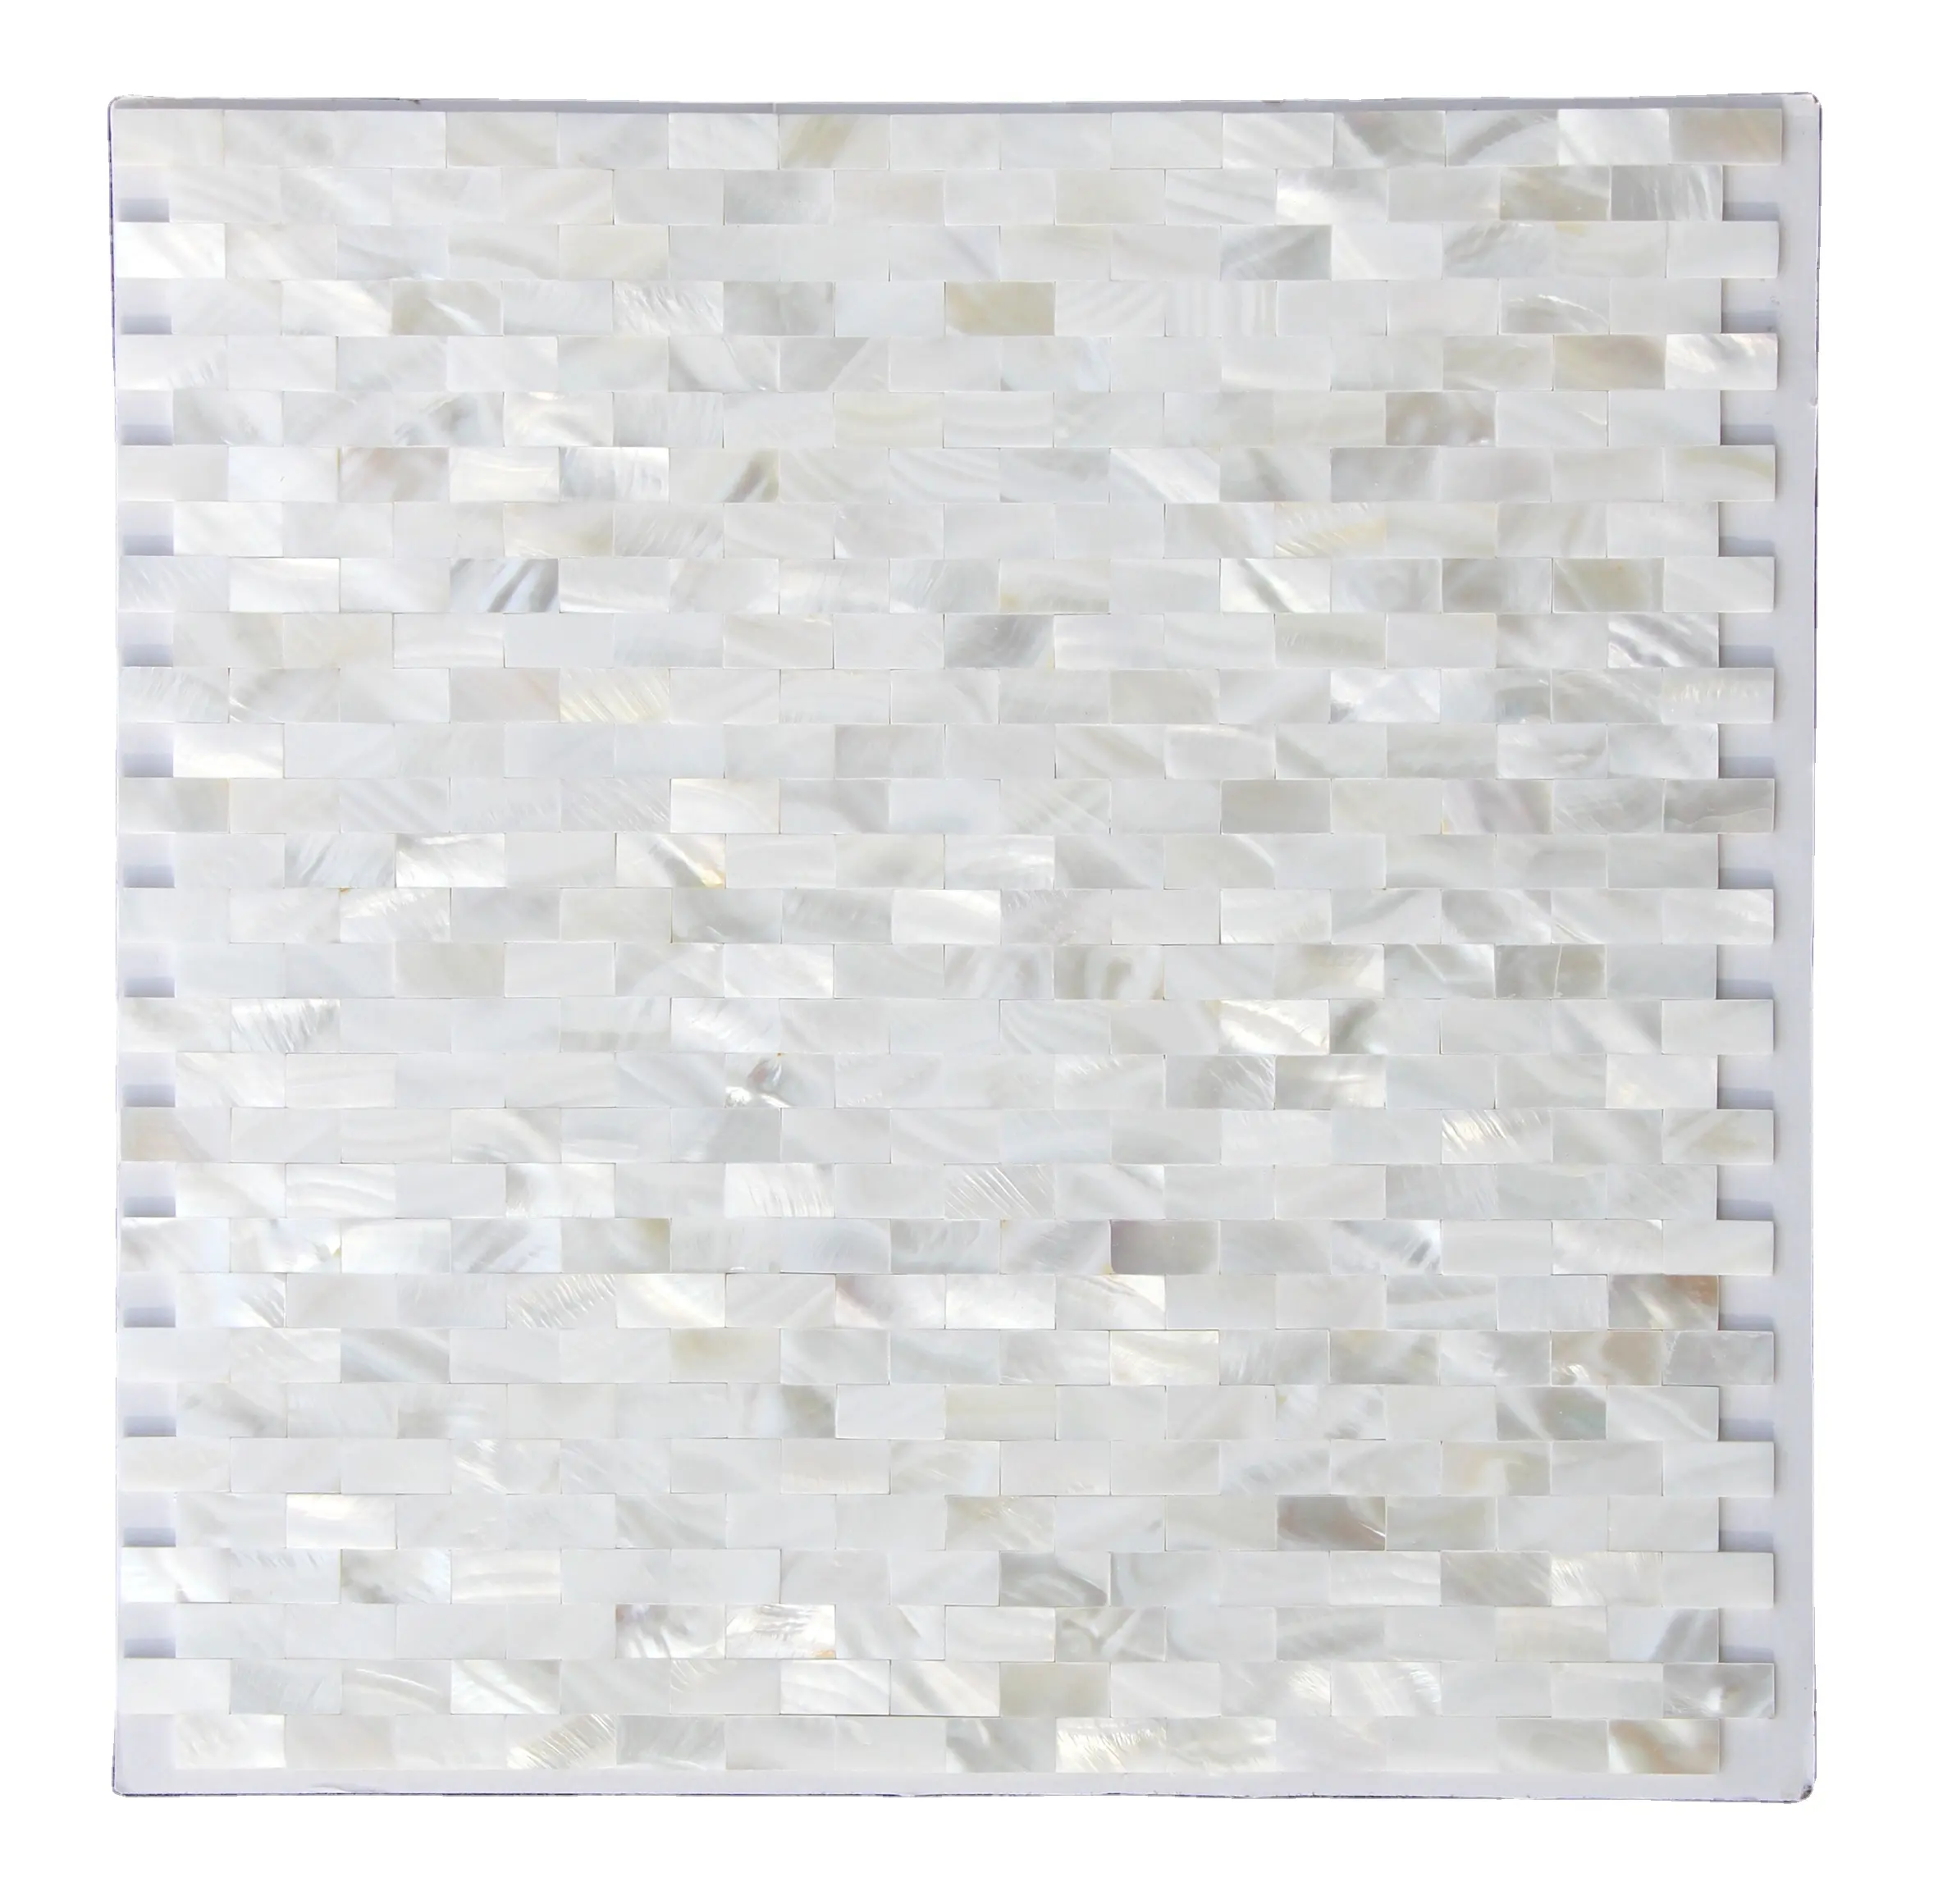 Lucido mattoni della parete della cucina bianco madre di perla piastrelle decorative